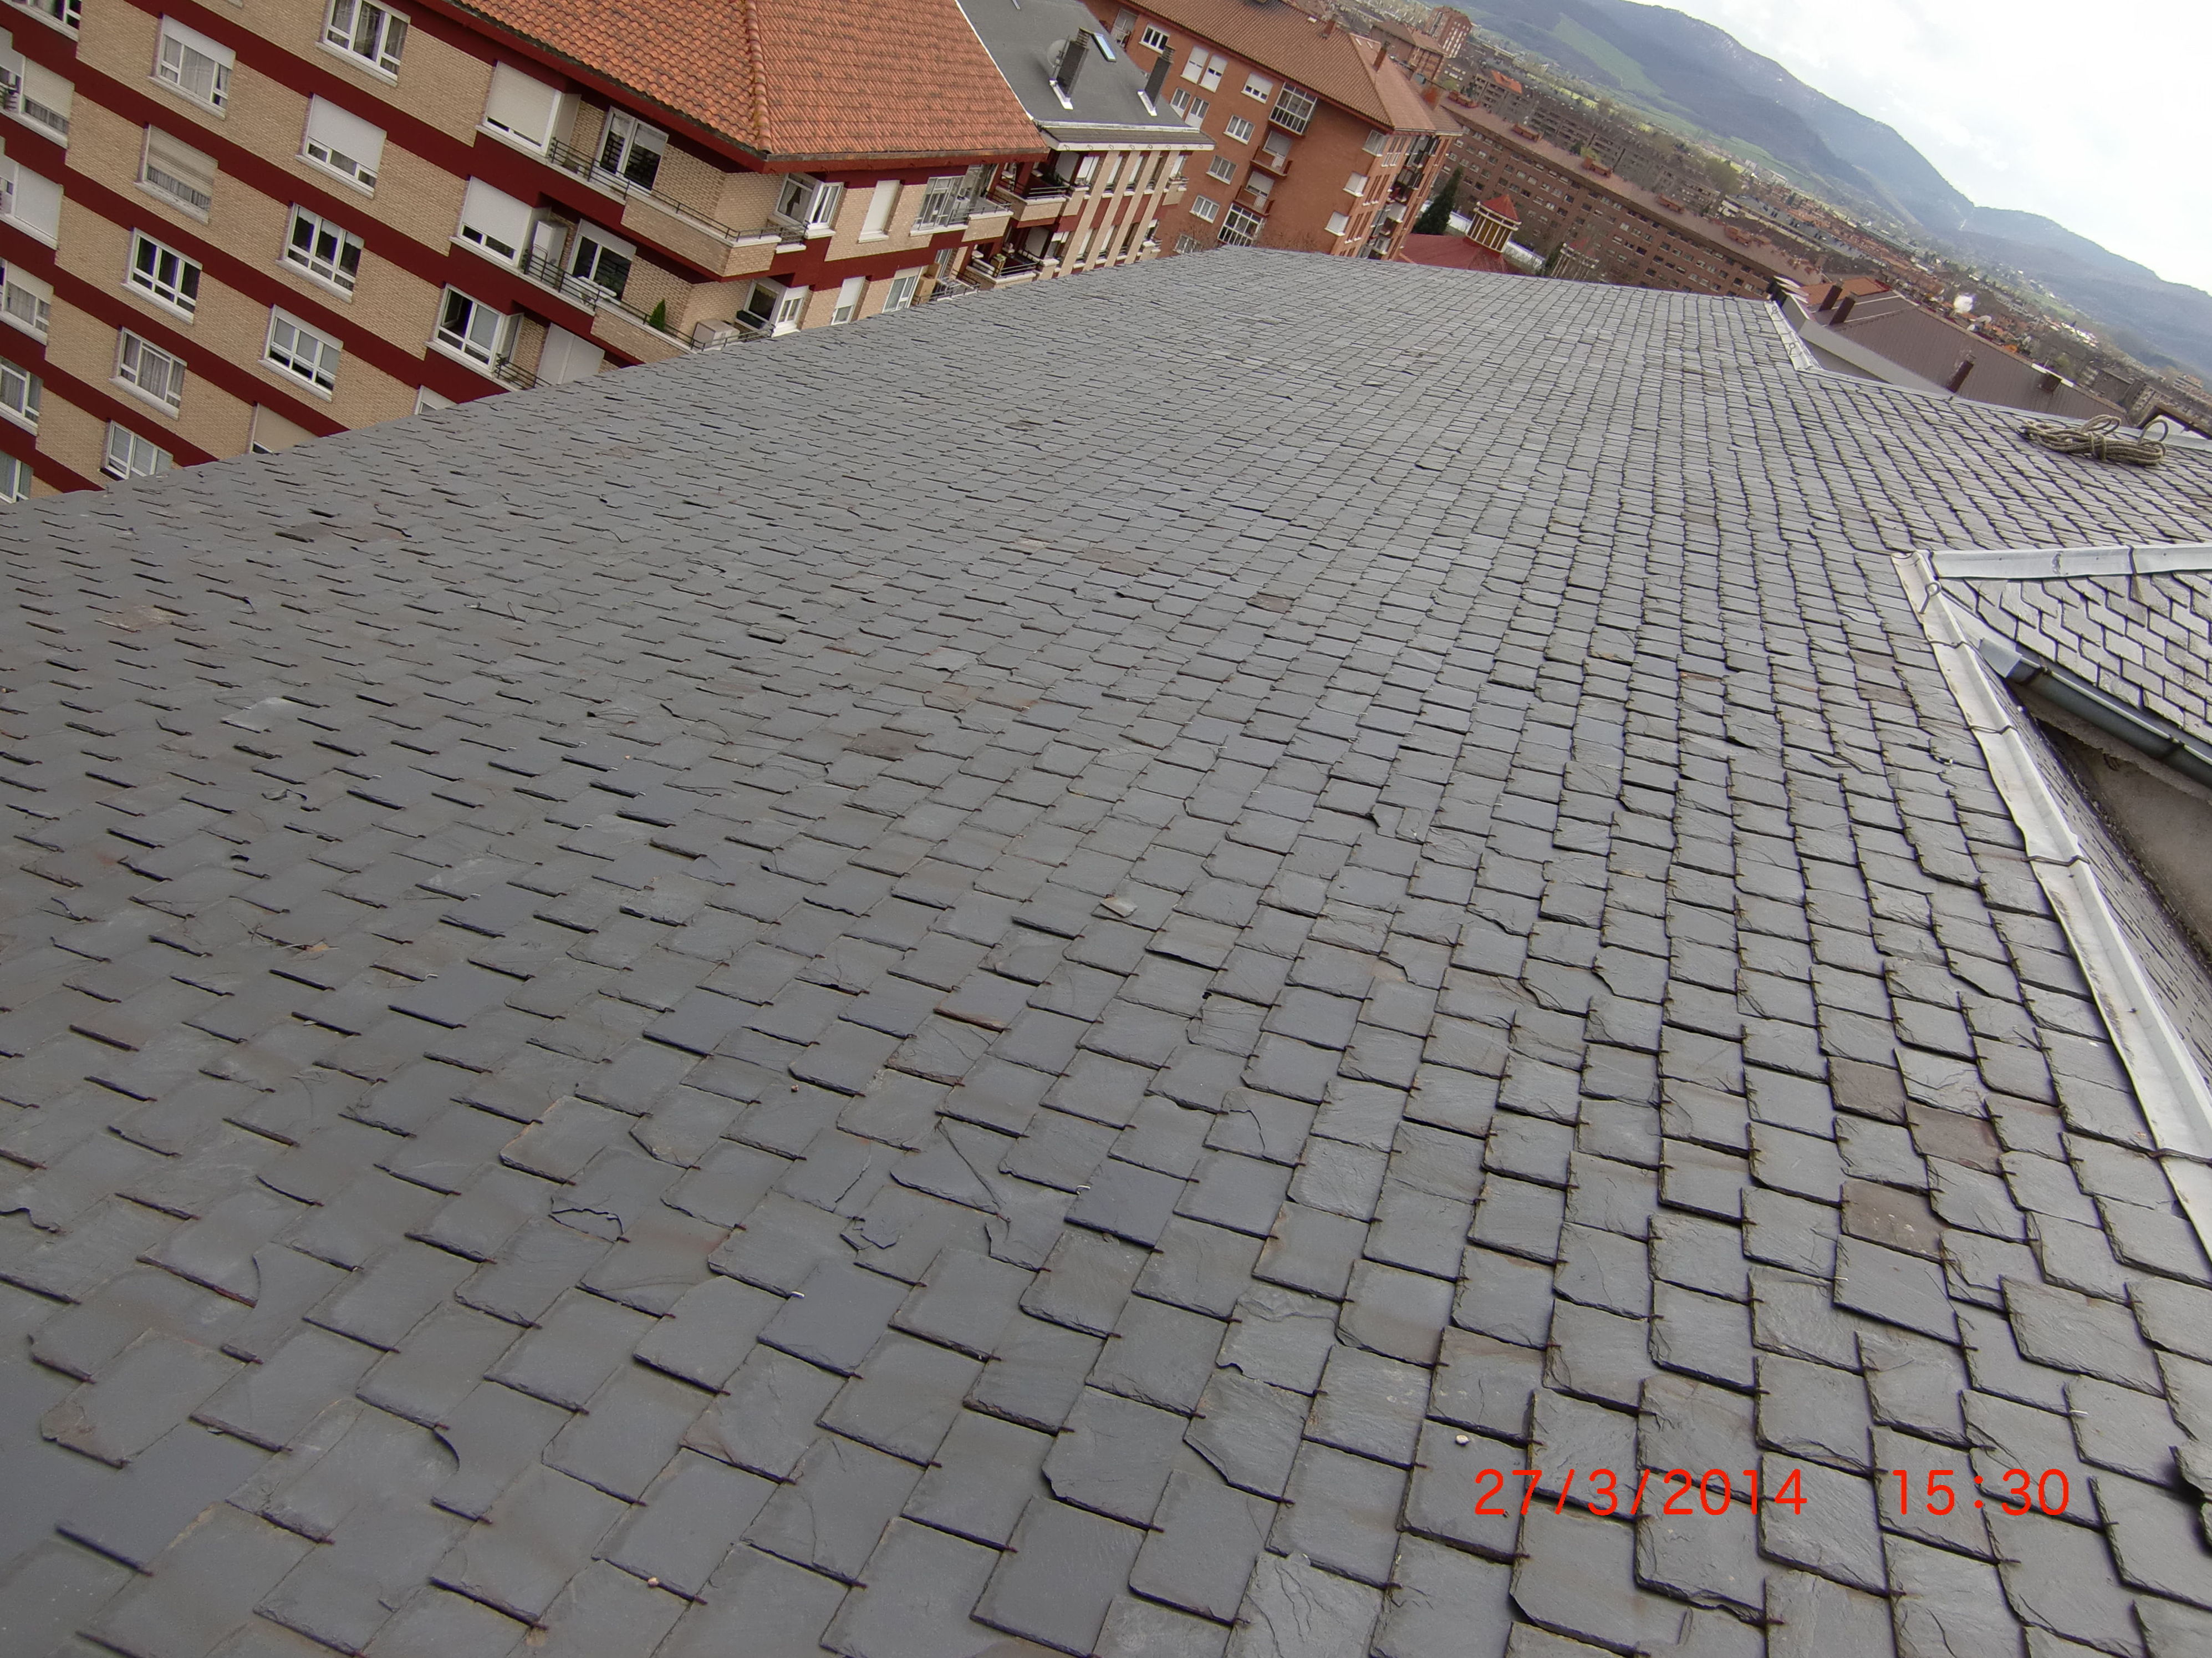 Rehabilitación de tejado en la calle Chile, 6 Vitoria-Gasteiz antes de la obra